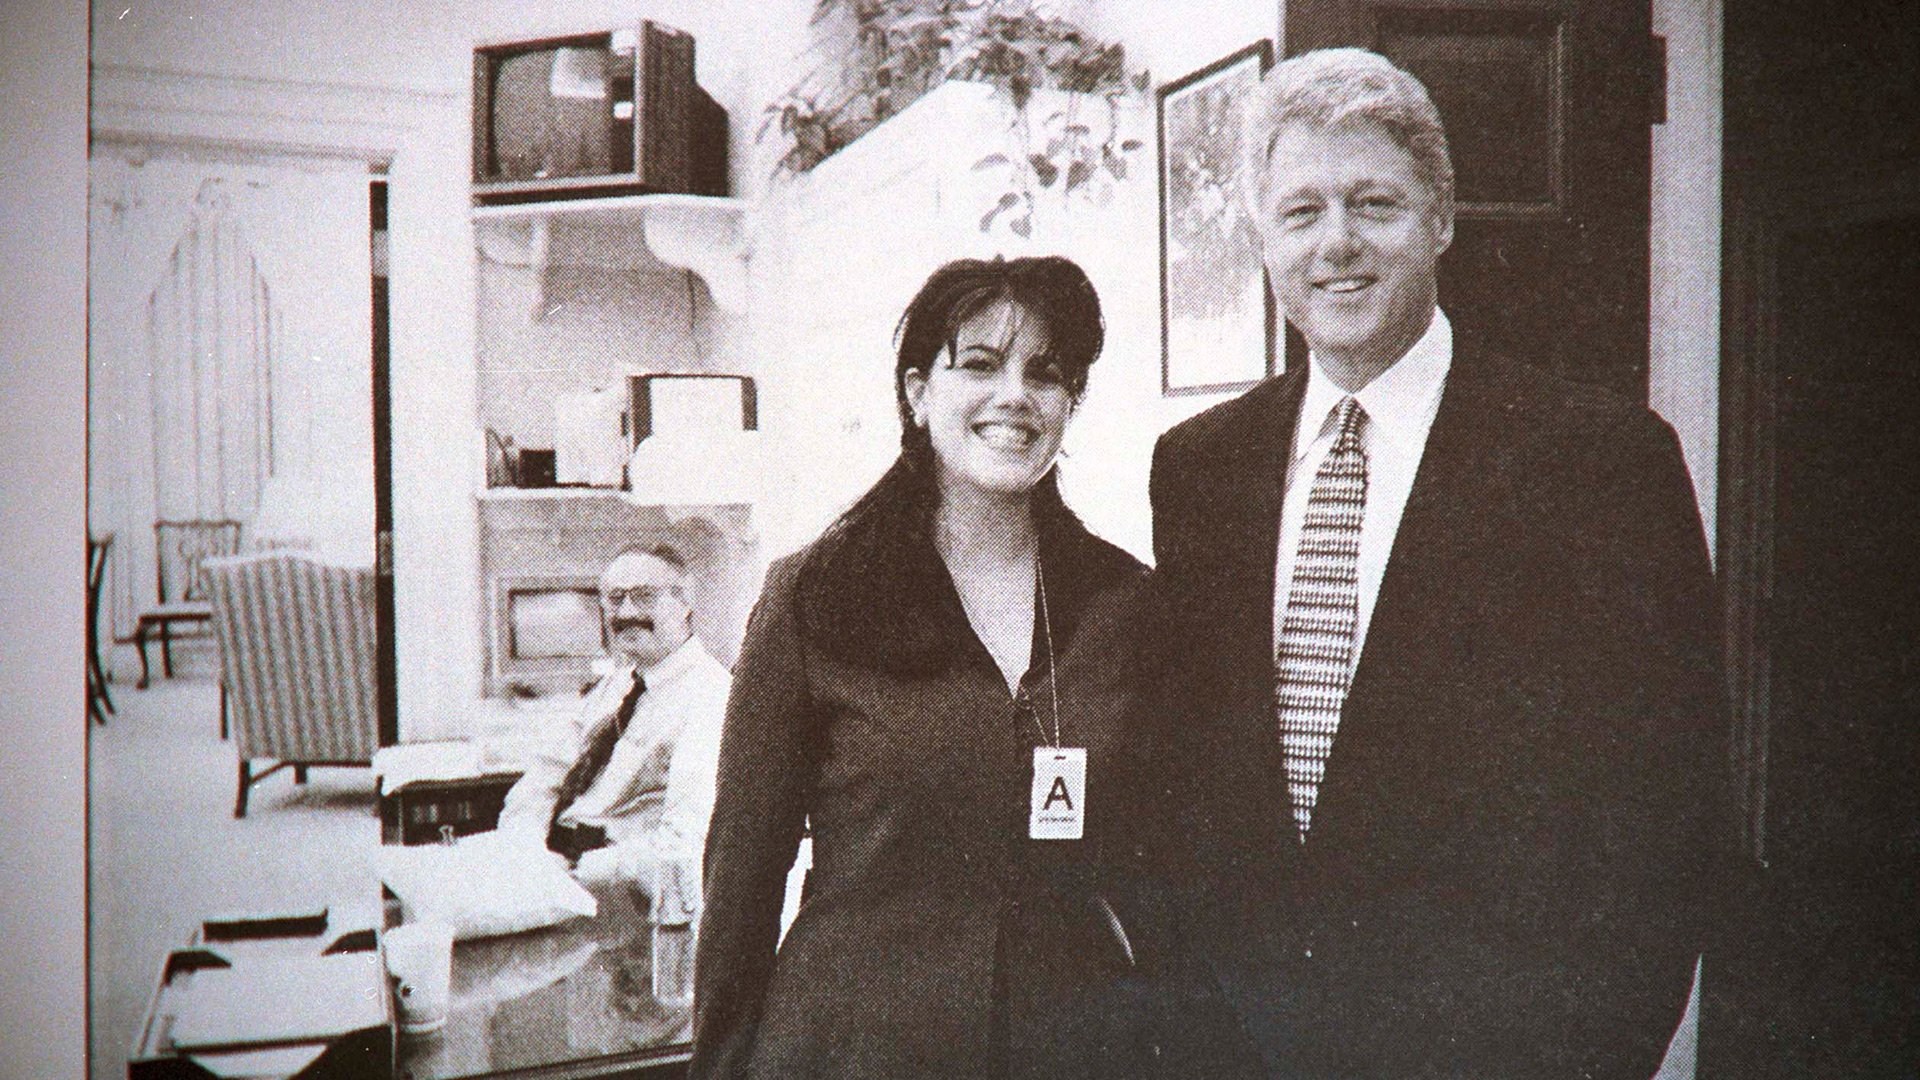 Un nuevo libro cuenta la insólita razón que habría esgrimido Bill Clinton  para su relación con Monica Lewinsky - Infobae